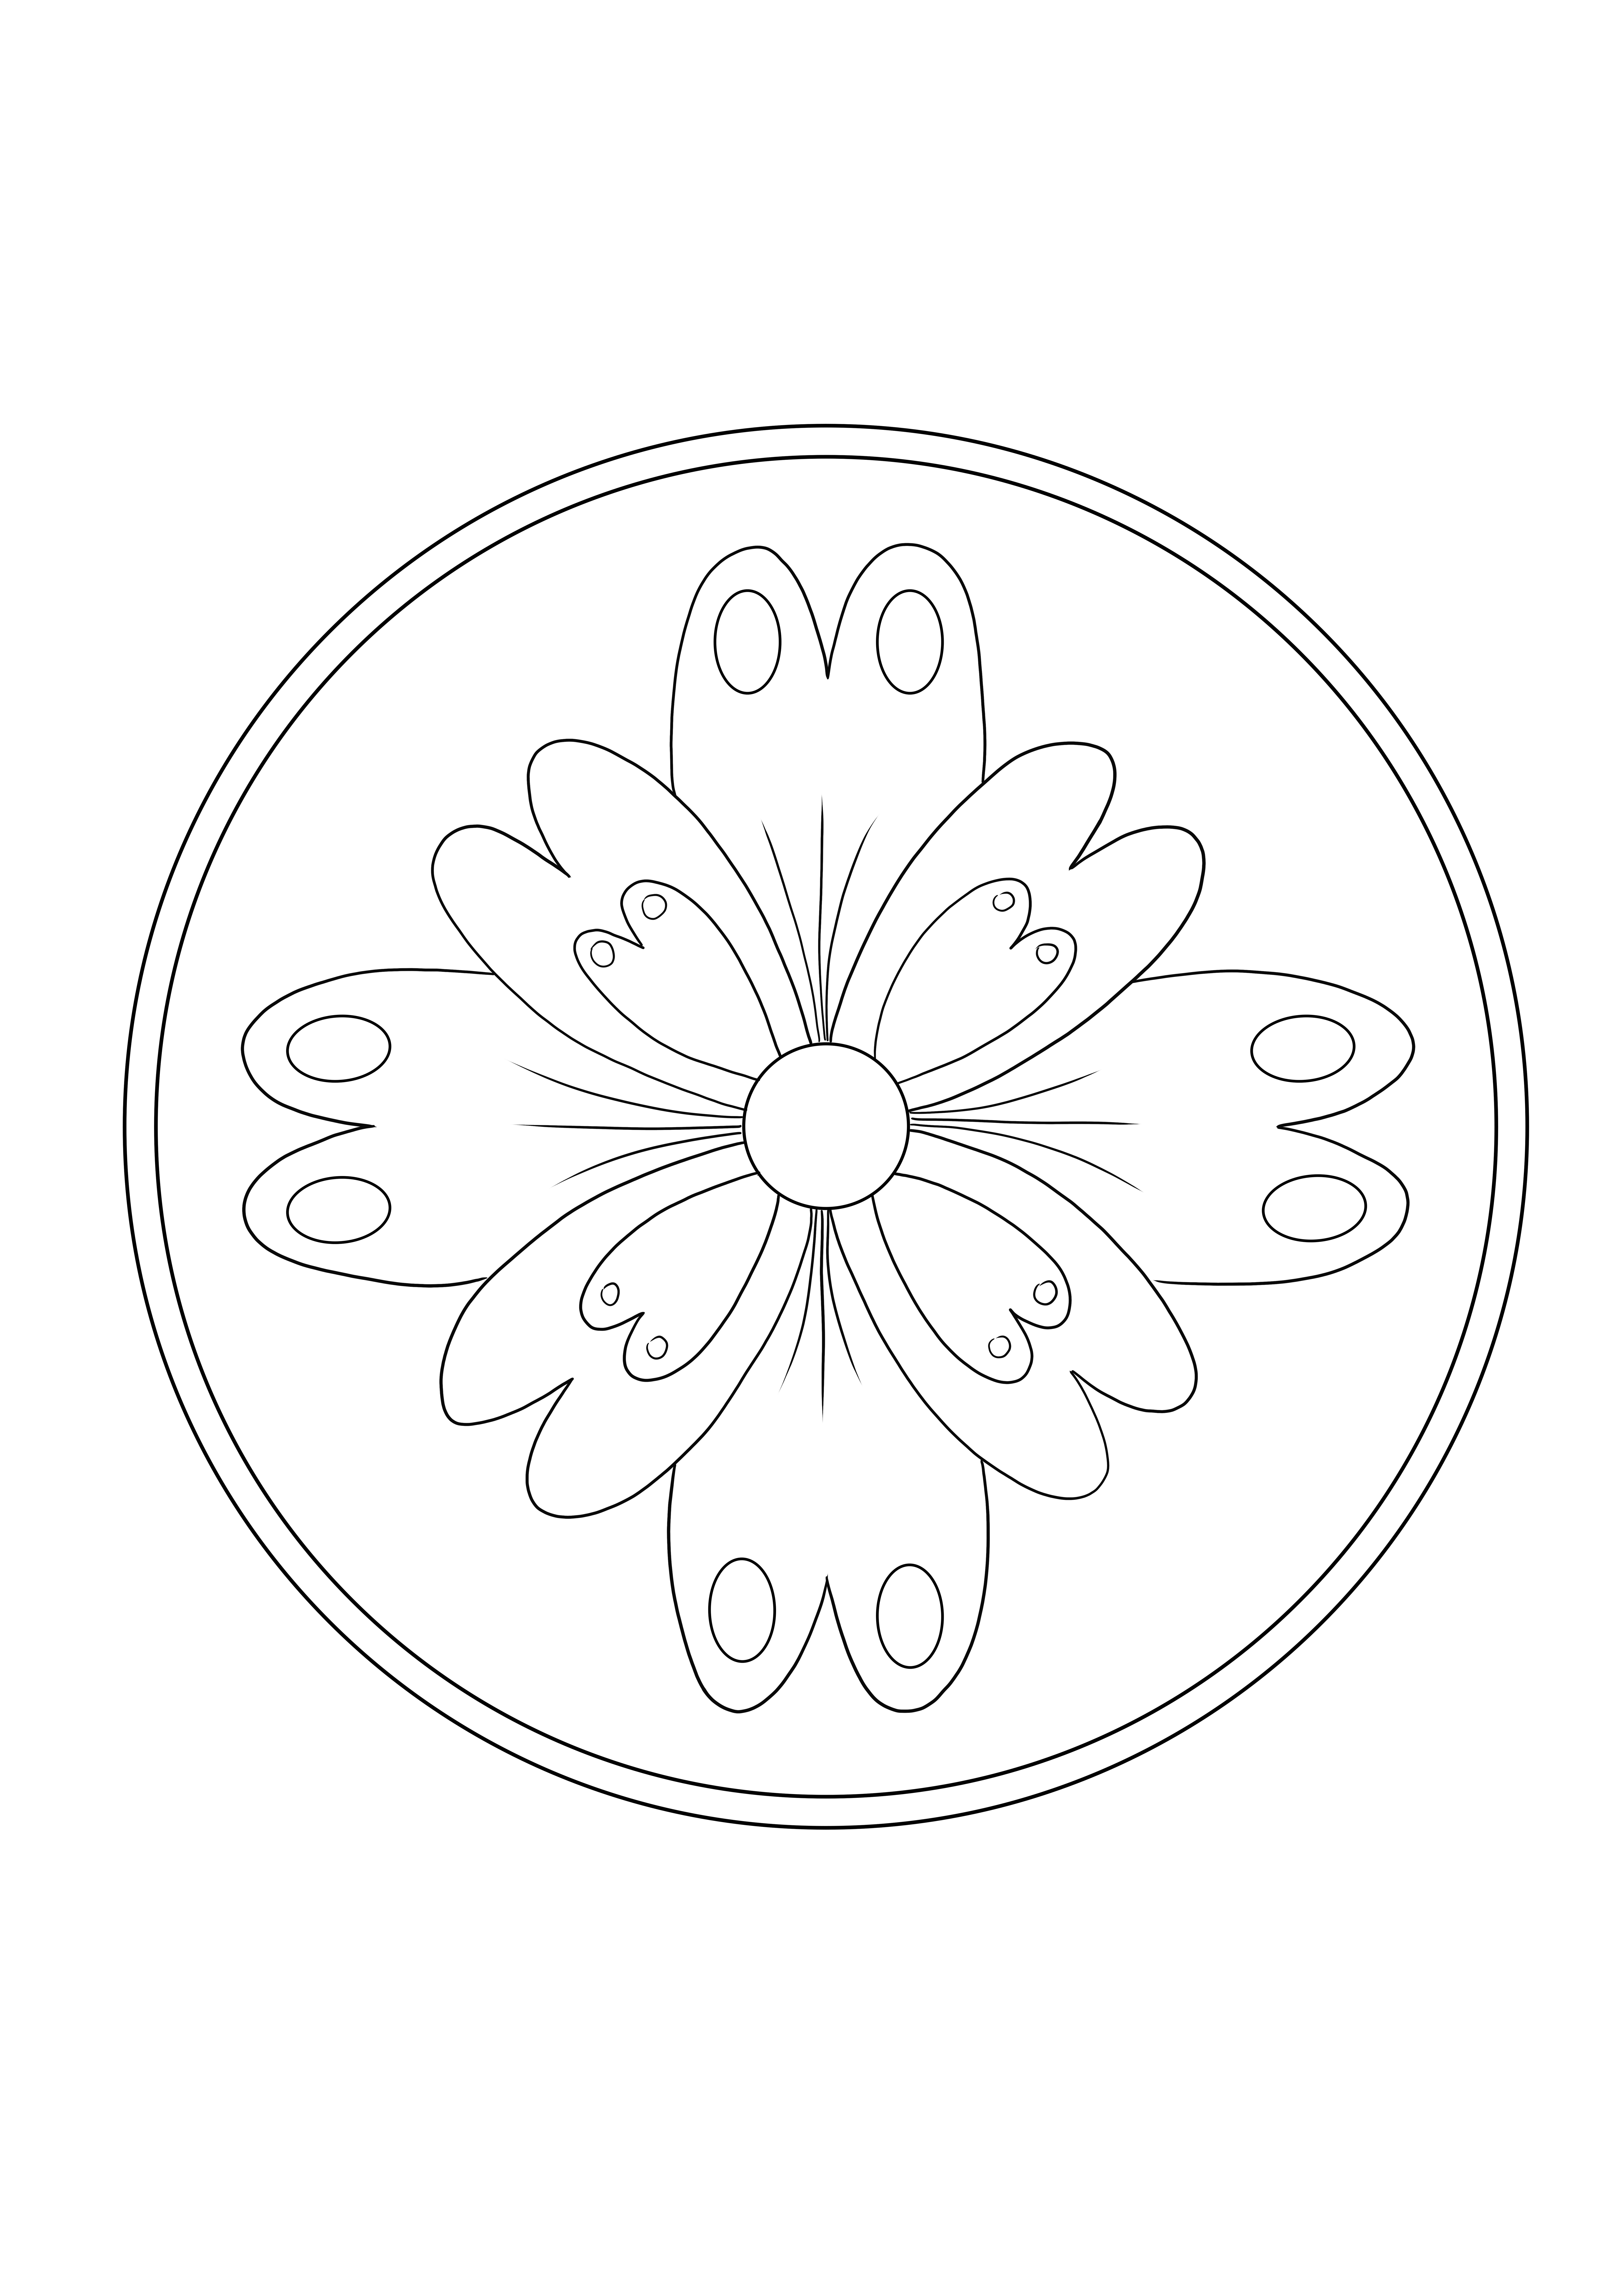 Easy Mandala Flower può essere scaricato gratuitamente e l'immagine a colori